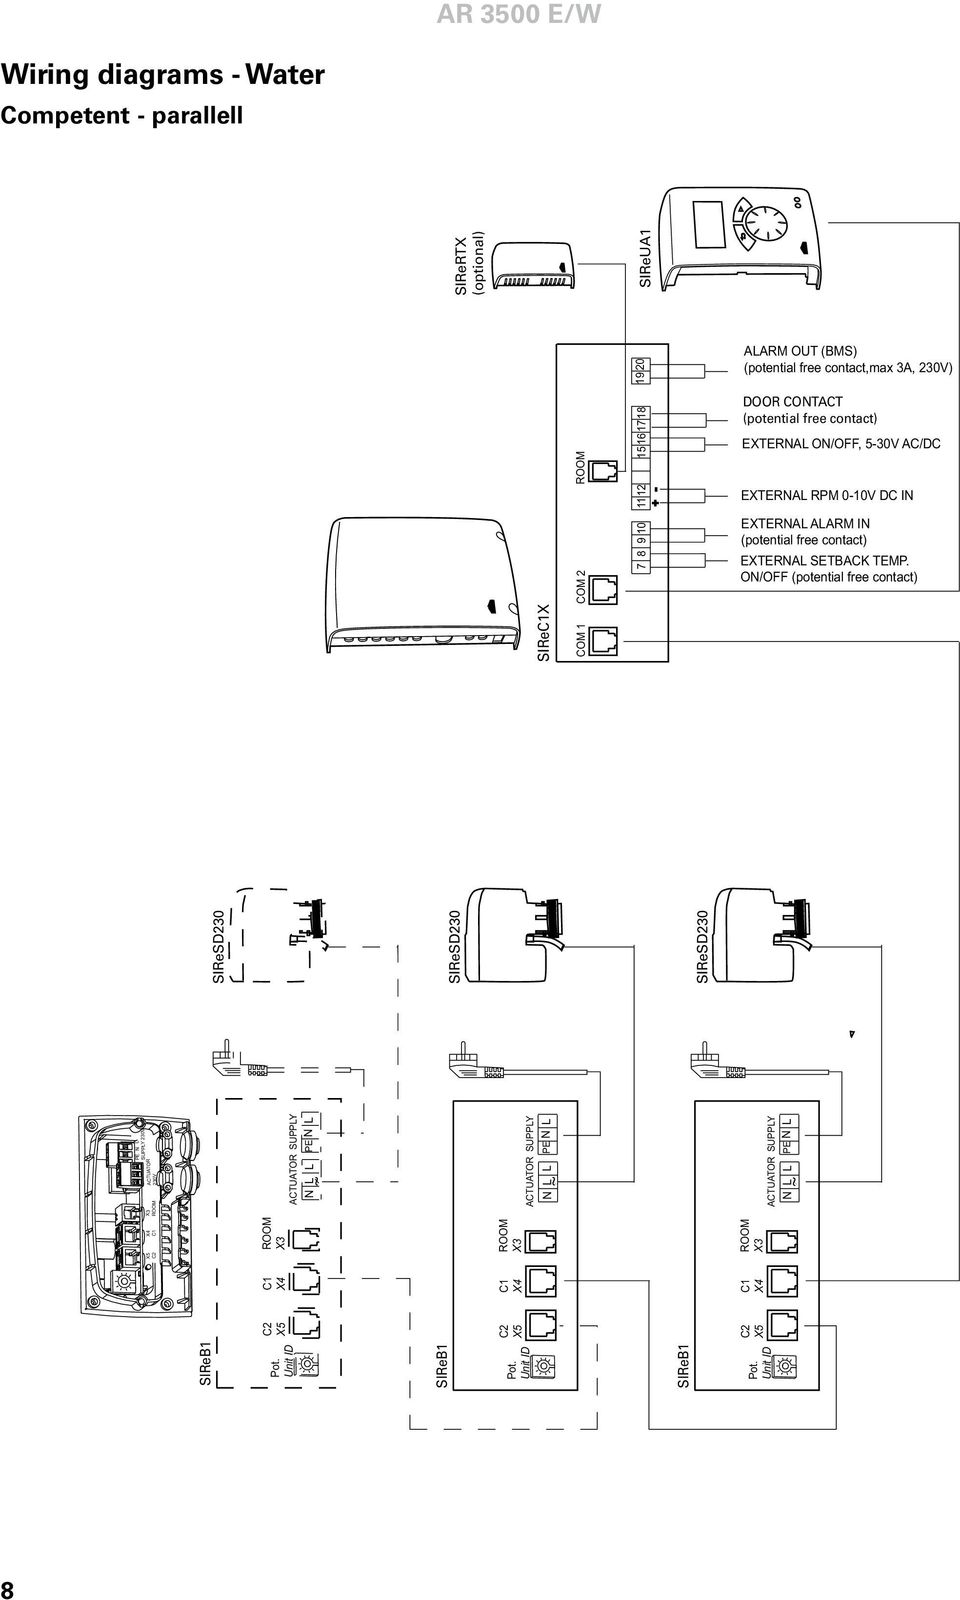 (BMS) (potential free contact,max 3A, 230V) DOOR CONTACT (potential free contact) EXTERNAL ON/OFF, 5-30V AC/DC EXTERNAL RPM 0-10V